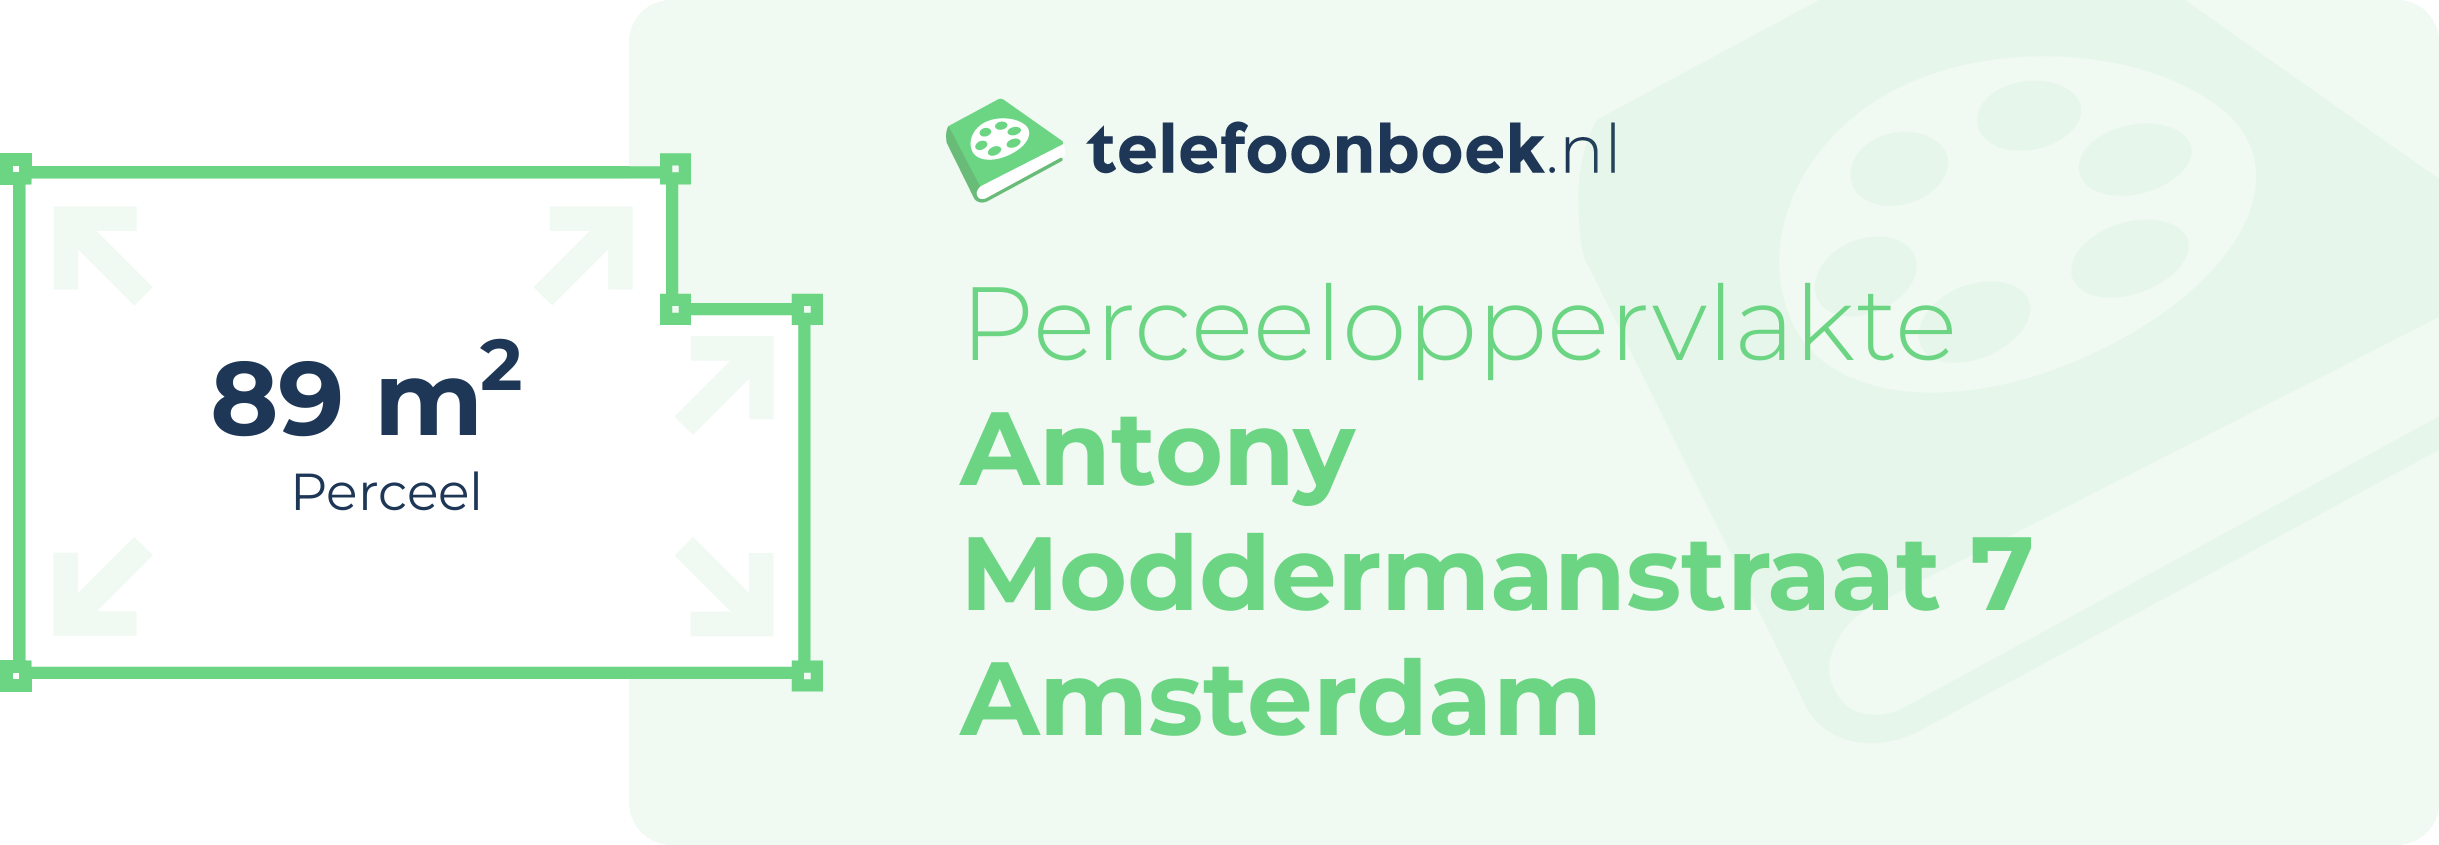 Perceeloppervlakte Antony Moddermanstraat 7 Amsterdam